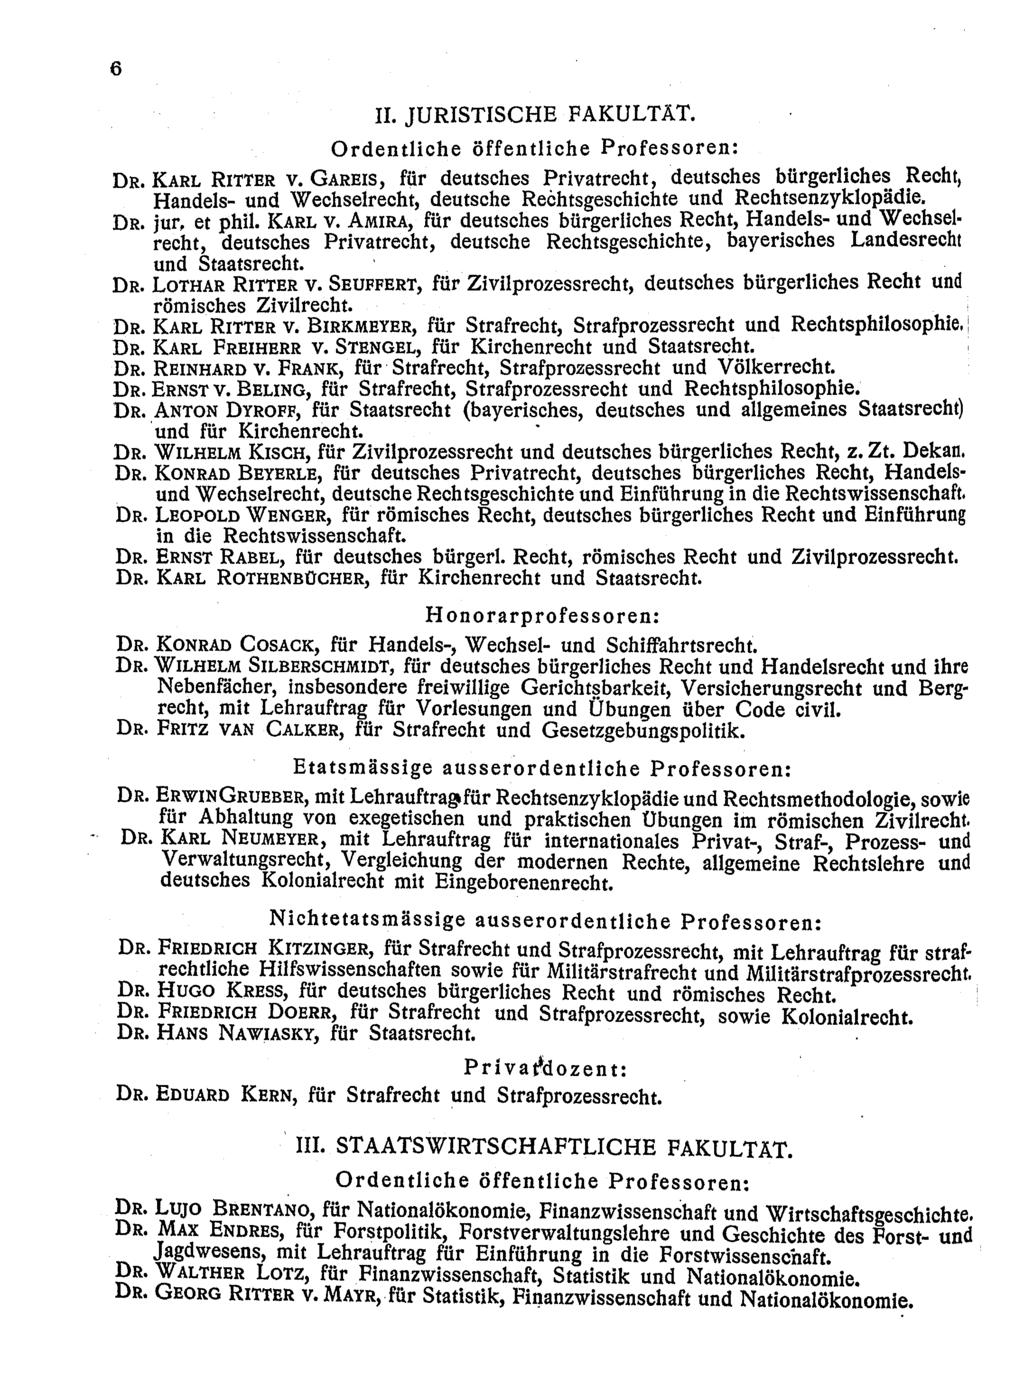 6 H. JURISTISCHE FAKULTÄT. Ordentliche öffentliche Professoren: DR. KARL RITTER V. GAREIS, für deutsches Privatrecht, deutsches bürgerliche~.